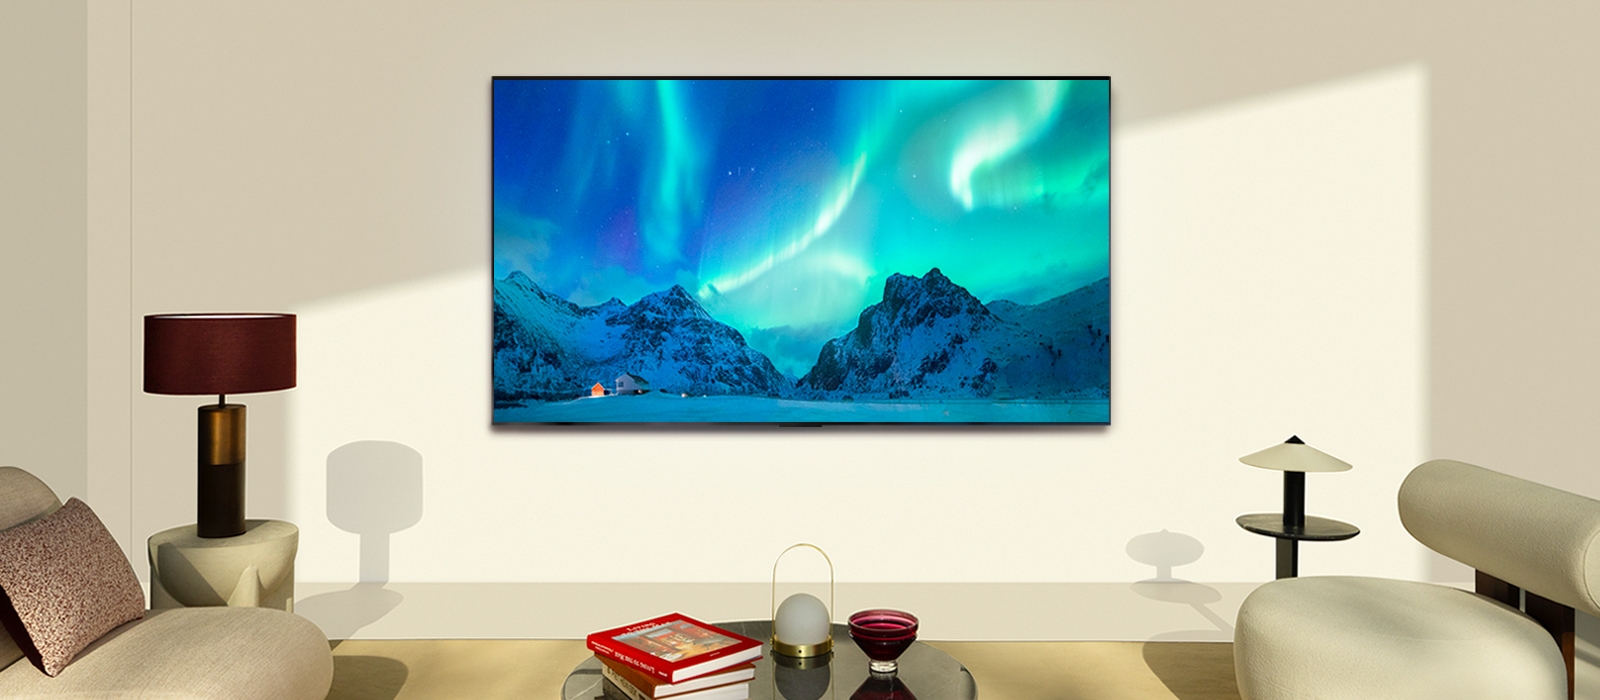 Téléviseur LG OLED TV dans un espace habitable moderne en journée. L'image de l'aurore boréale est affichée avec les niveaux de luminosité idéaux.